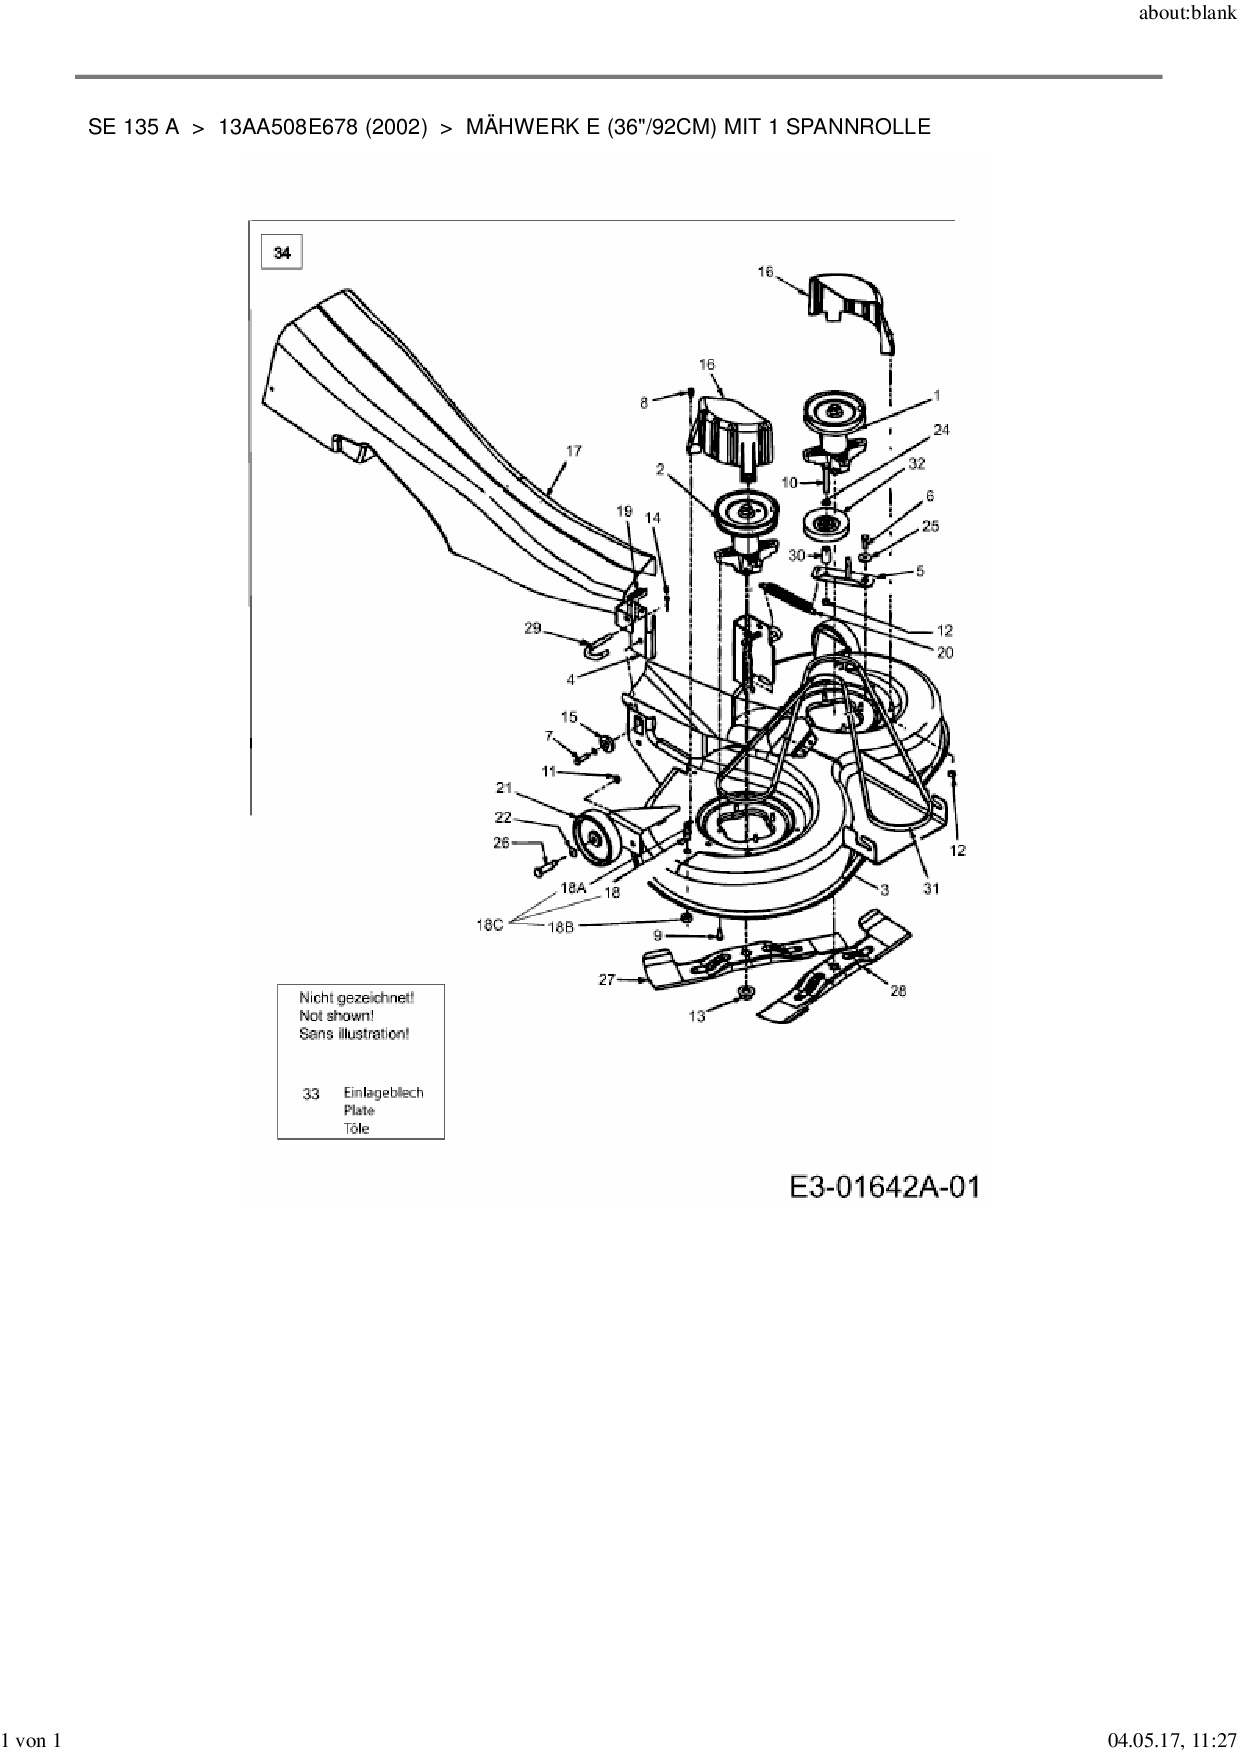 Ersatzteile von MTD Rasentraktor SE 135 A aus der Zeichnung Mähwerk E